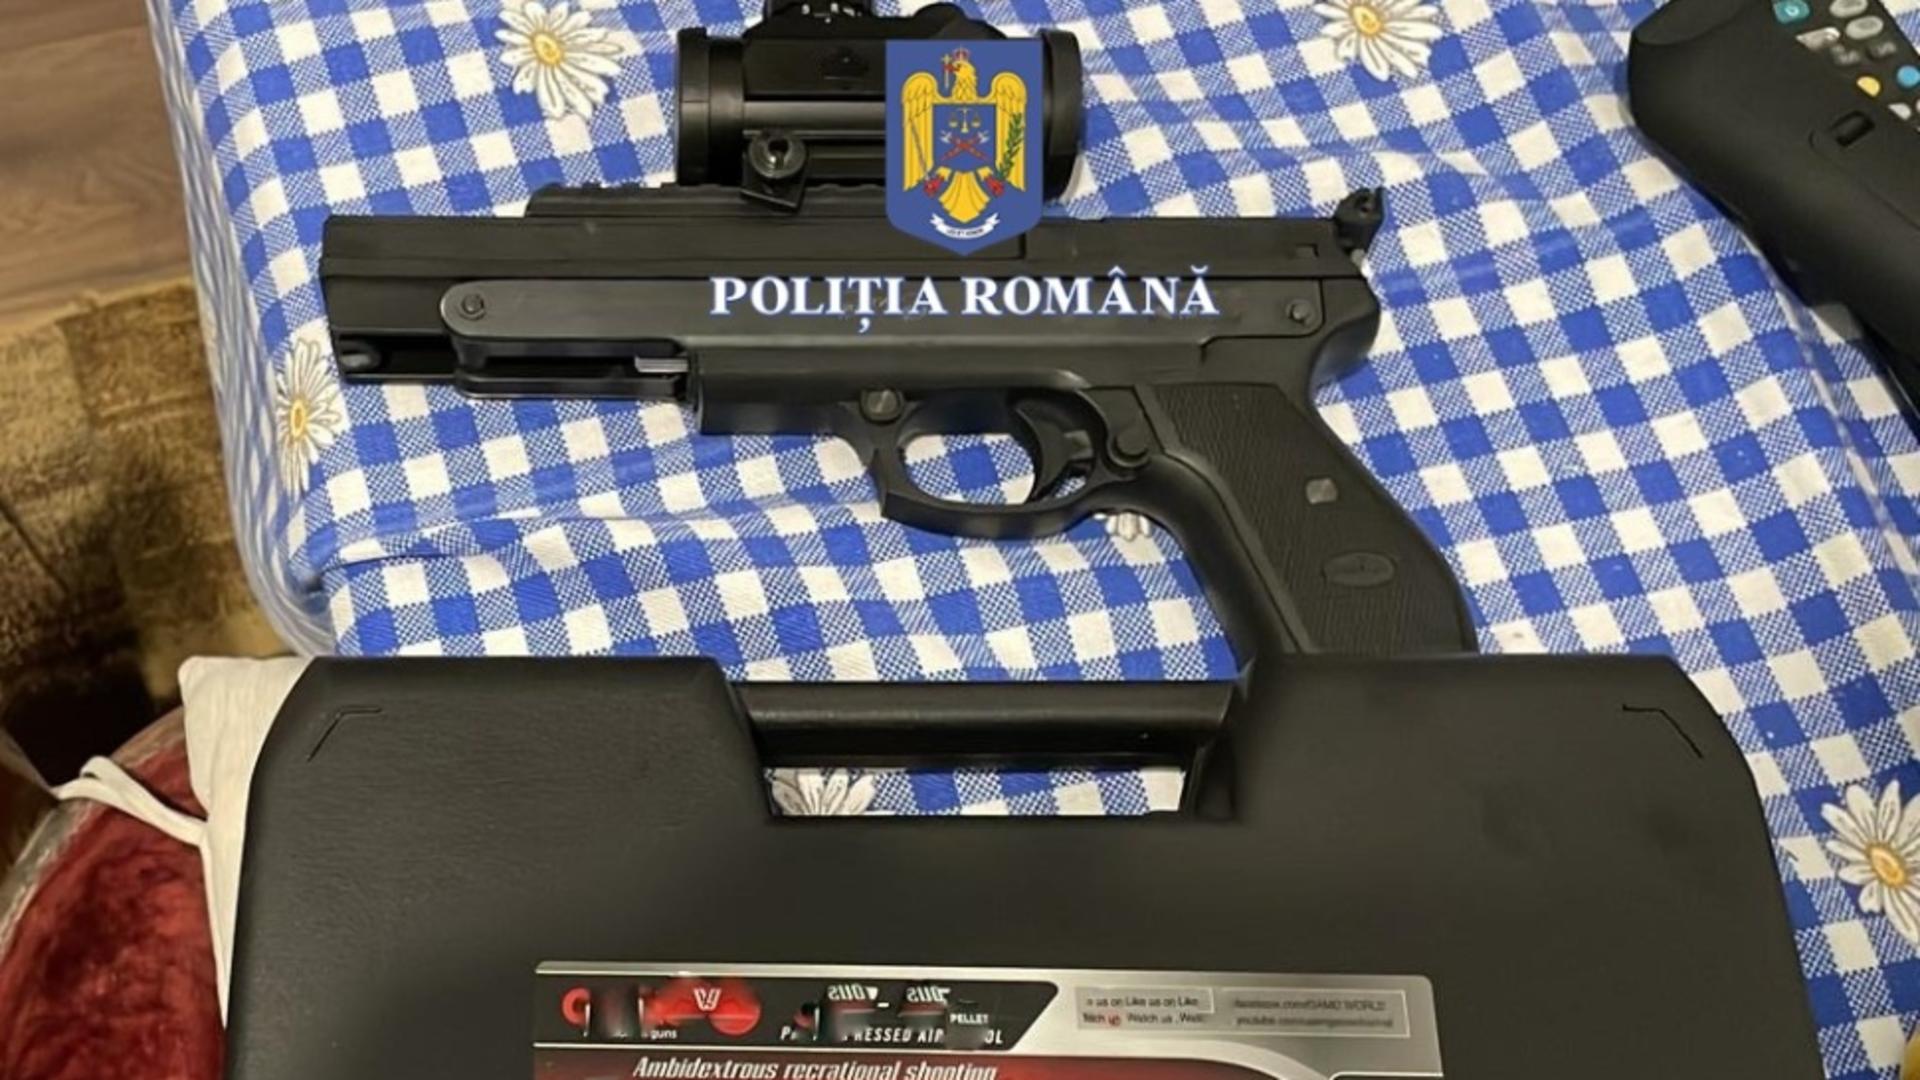 Trafic de arme în România – Polițiștii au descins simultan la 145 de comercianți ilegali – De unde aduceau armele